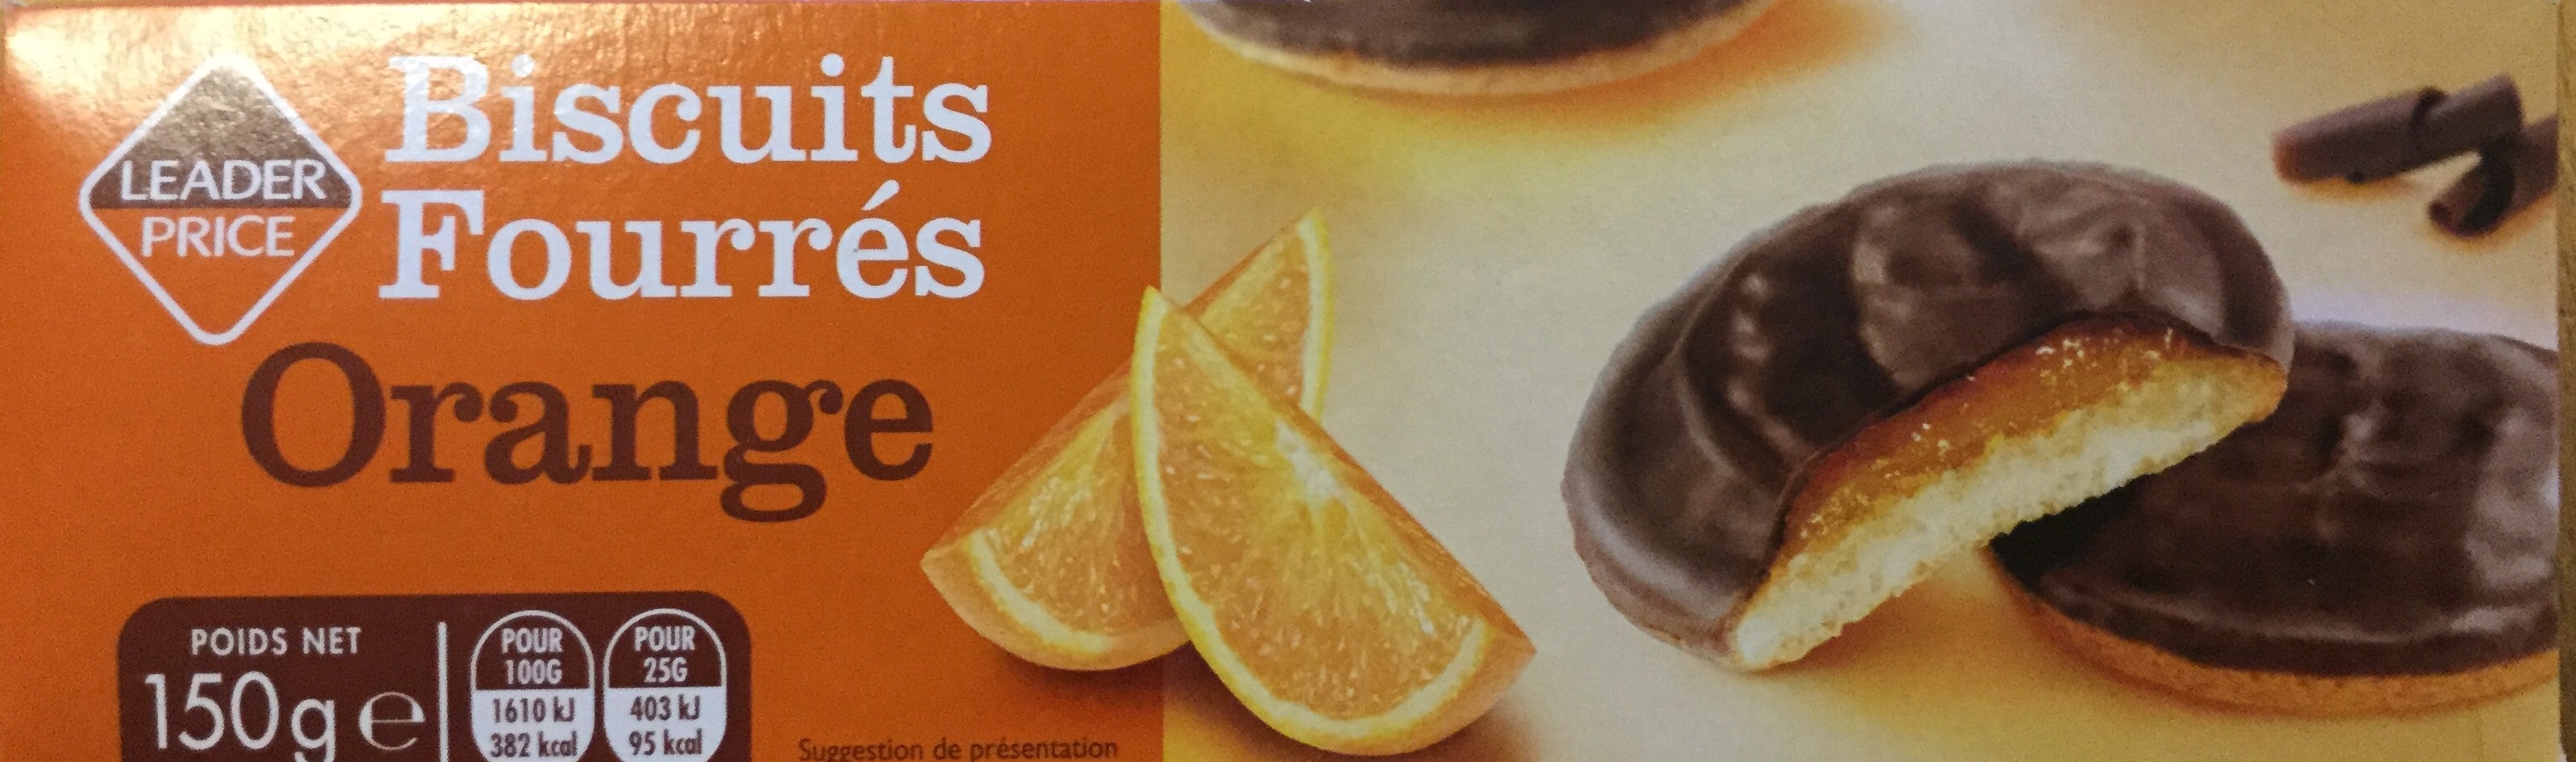 Biscuits fourrés orange - Produit